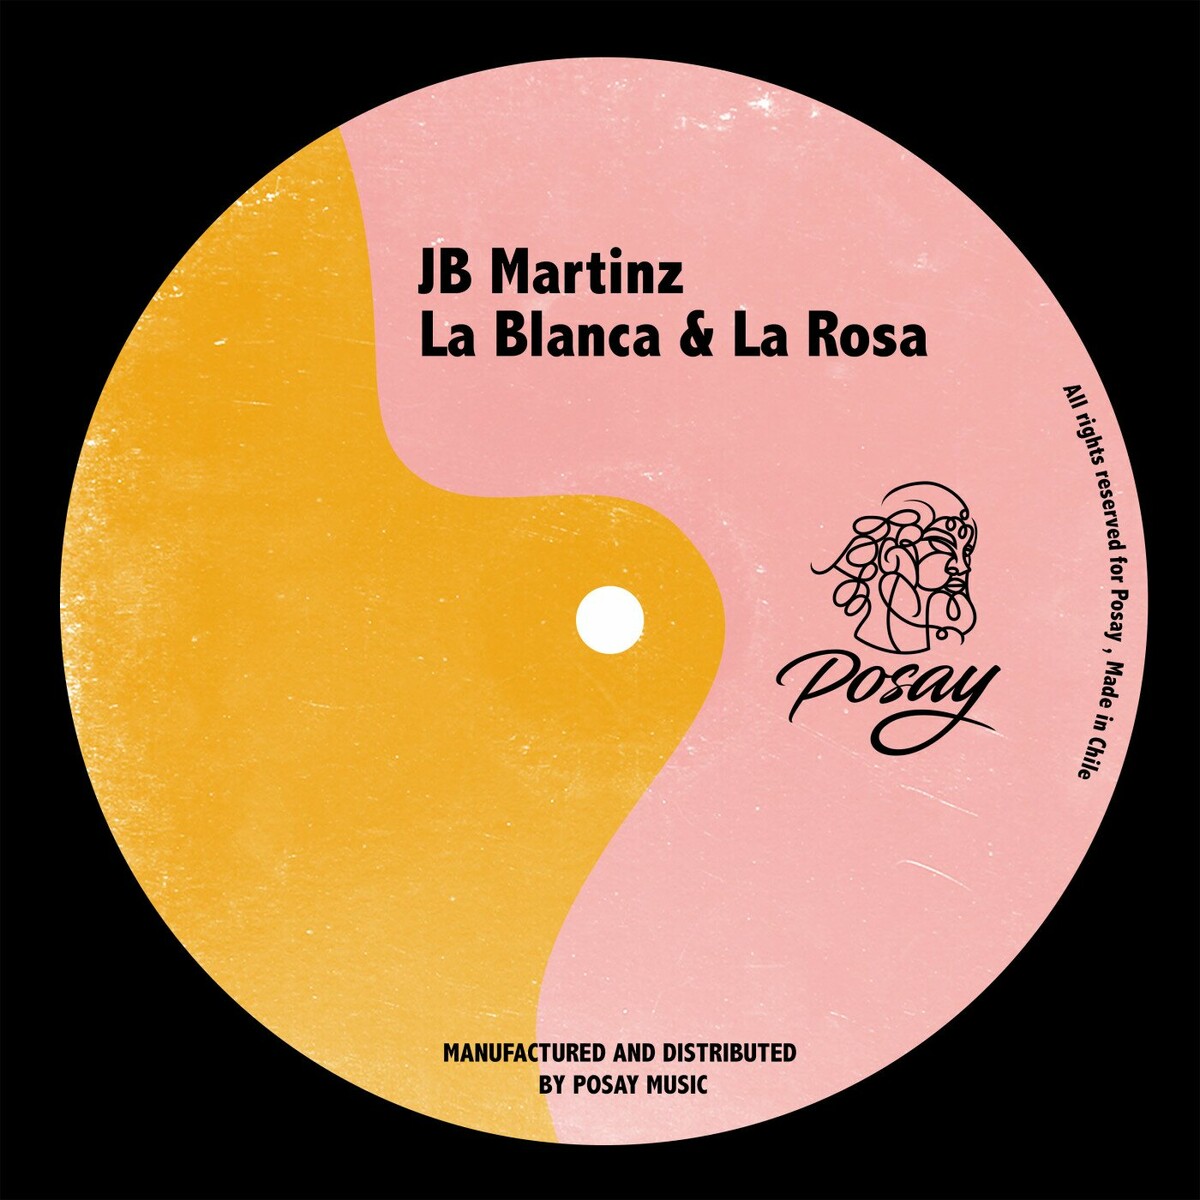 JB Martinz - La Blanca & La Rosa [P050] MP3 download